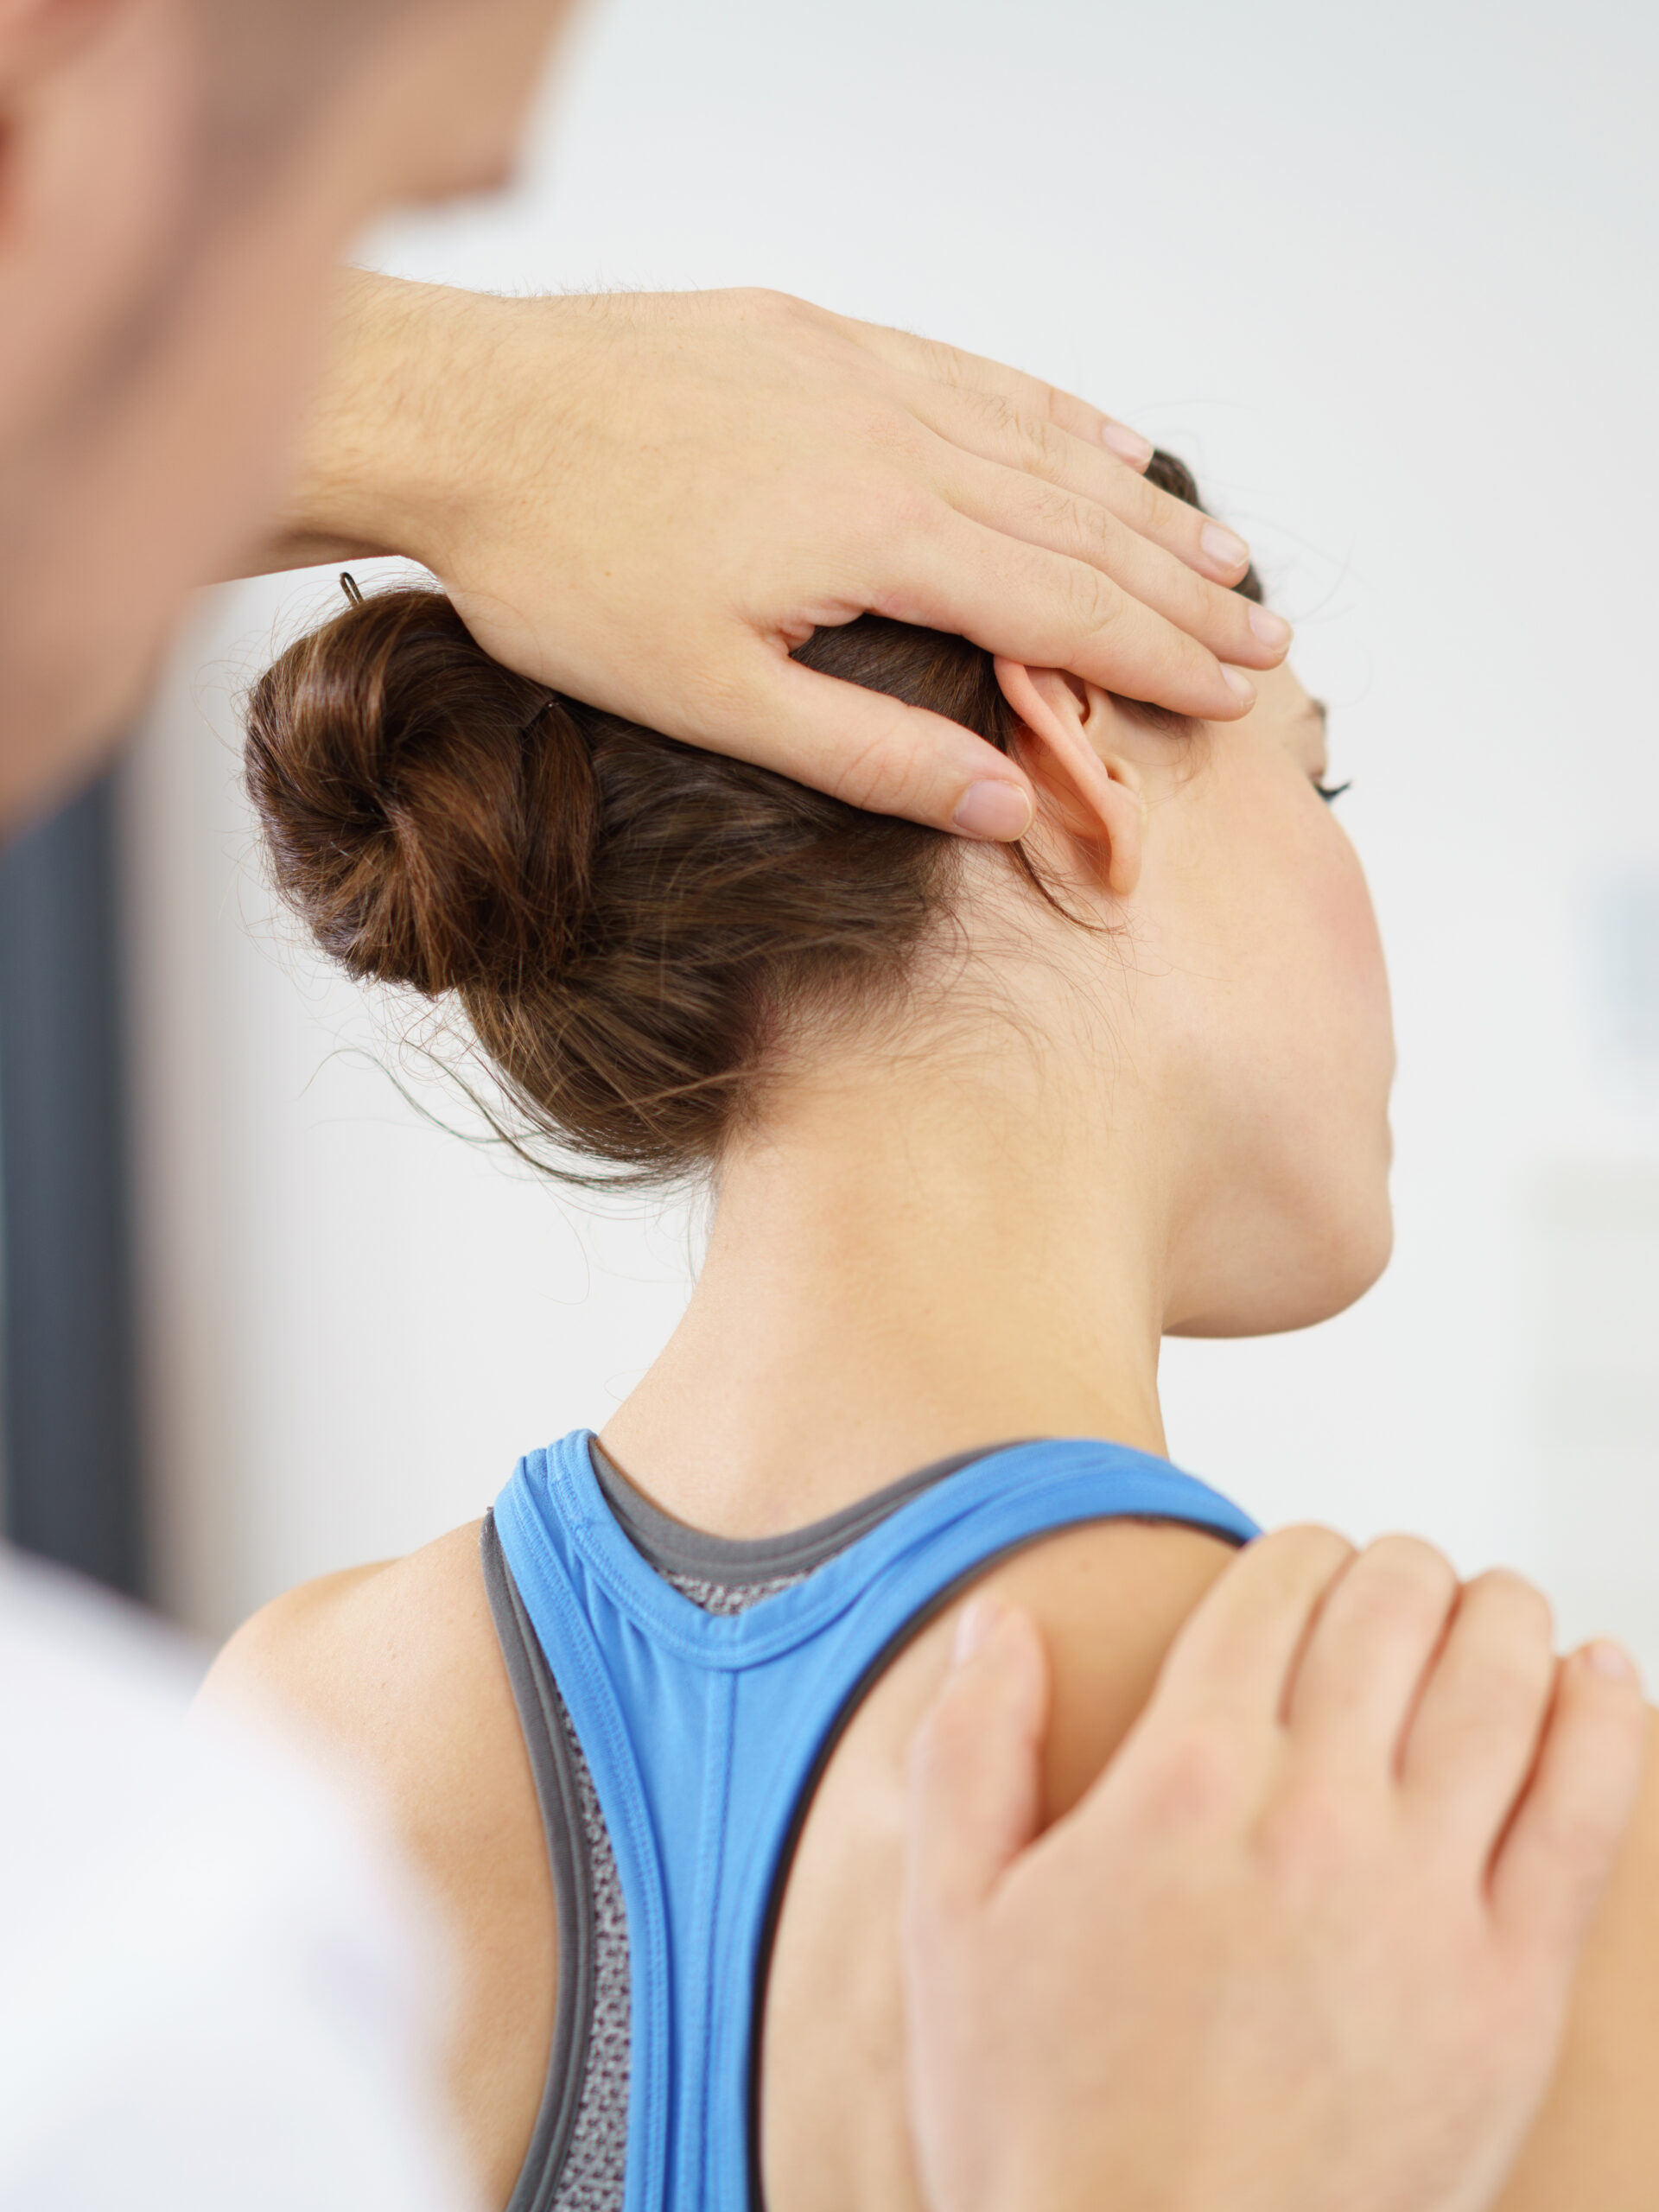 Physiotherapeut Behandelt Eine Patientin Mit Nackenschmerzen